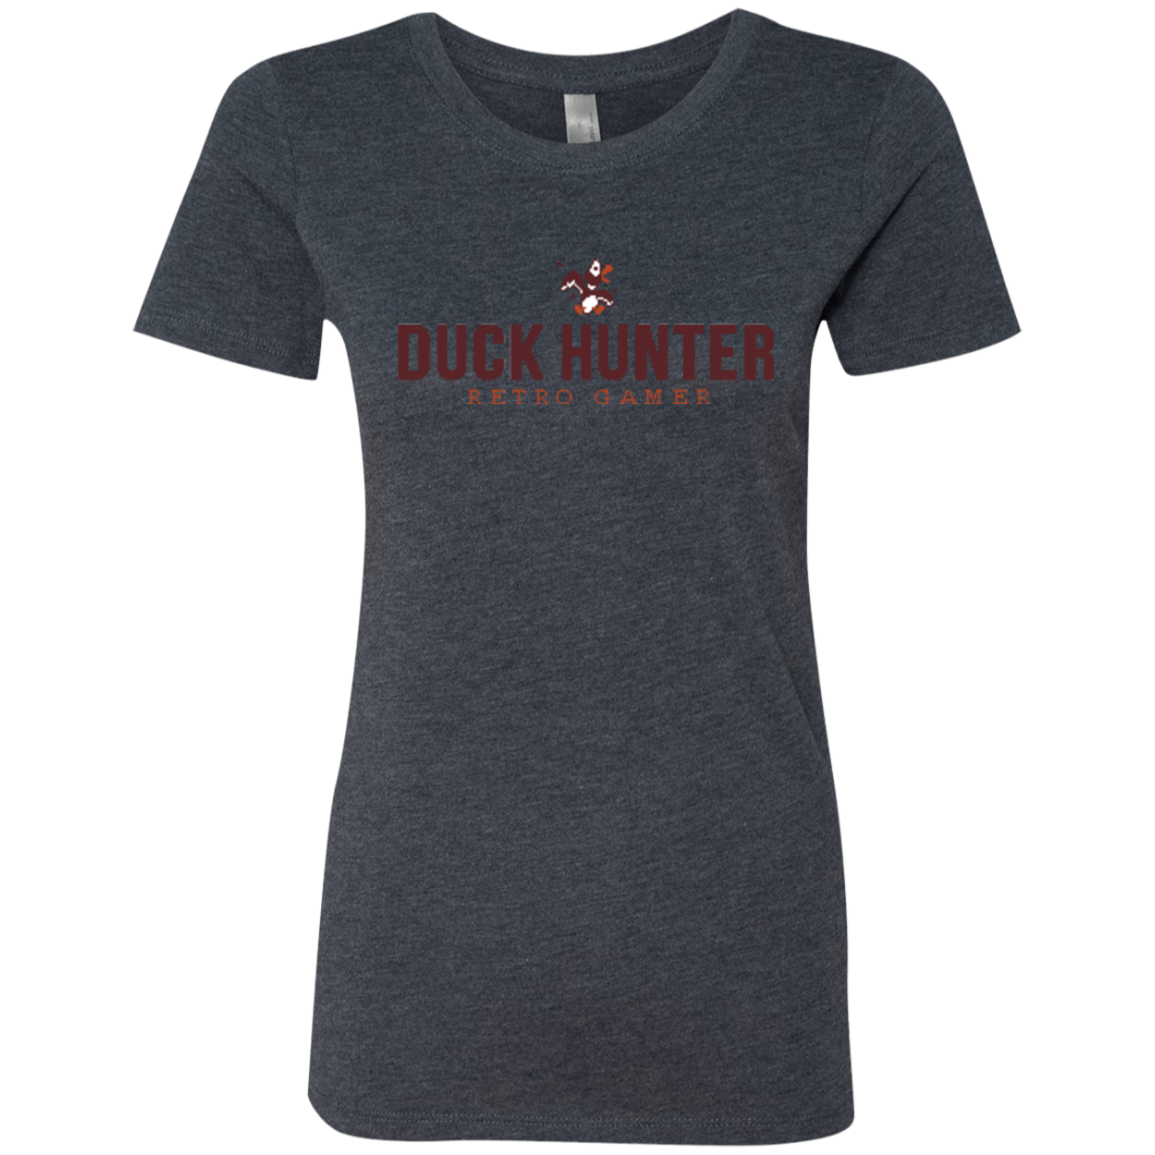 Duck hunter Women's Triblend T-Shirt